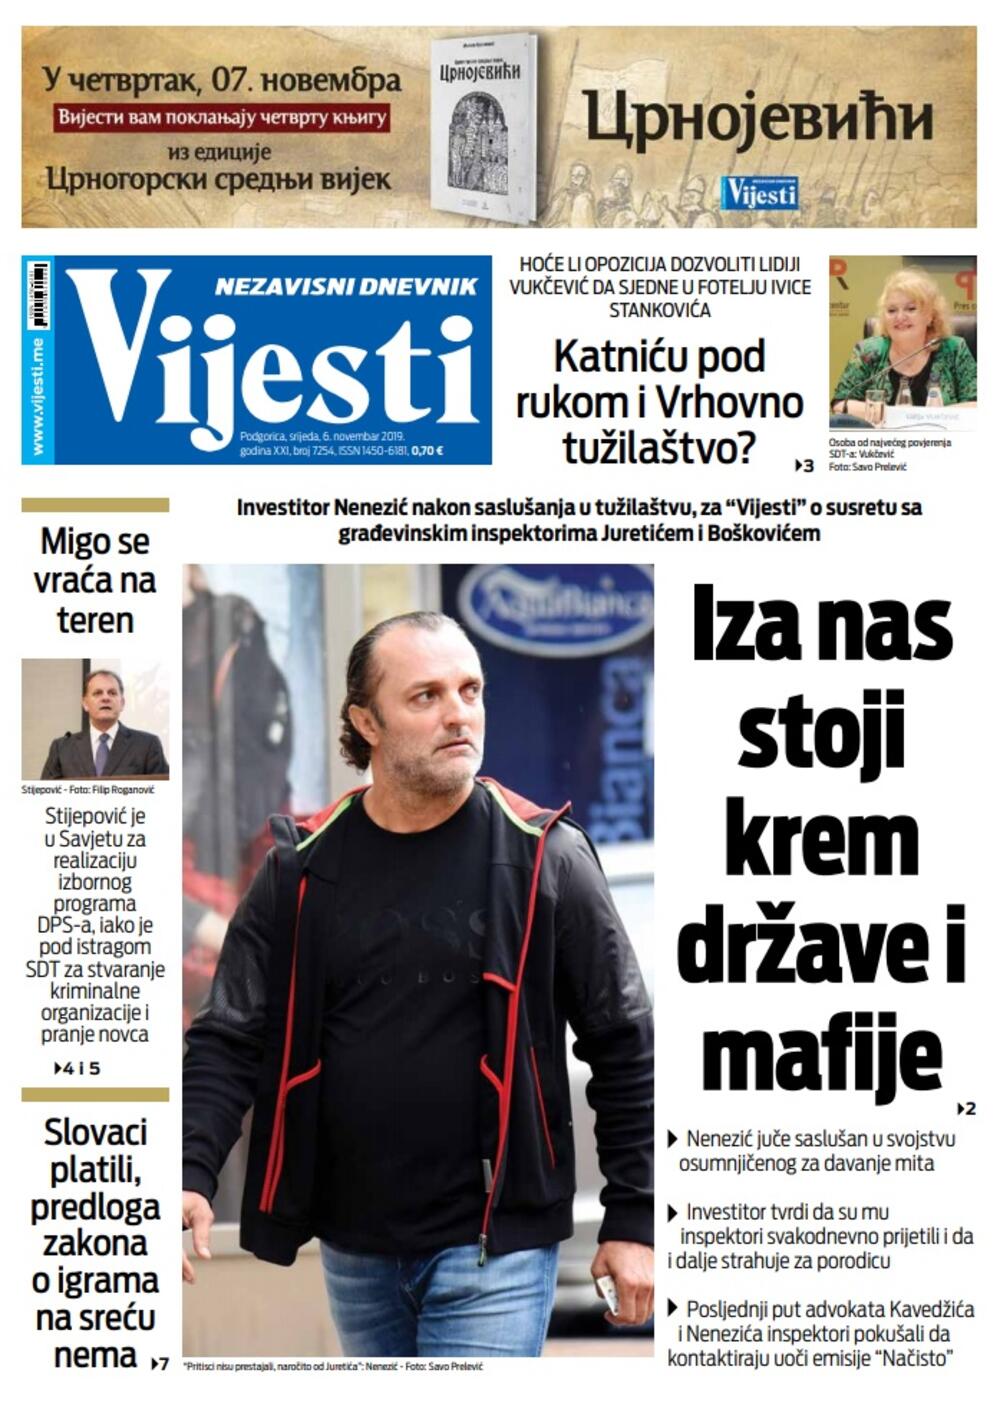 Naslovna strana "Vijesti" za 6. novembar 2019., Foto: "Vijesti"